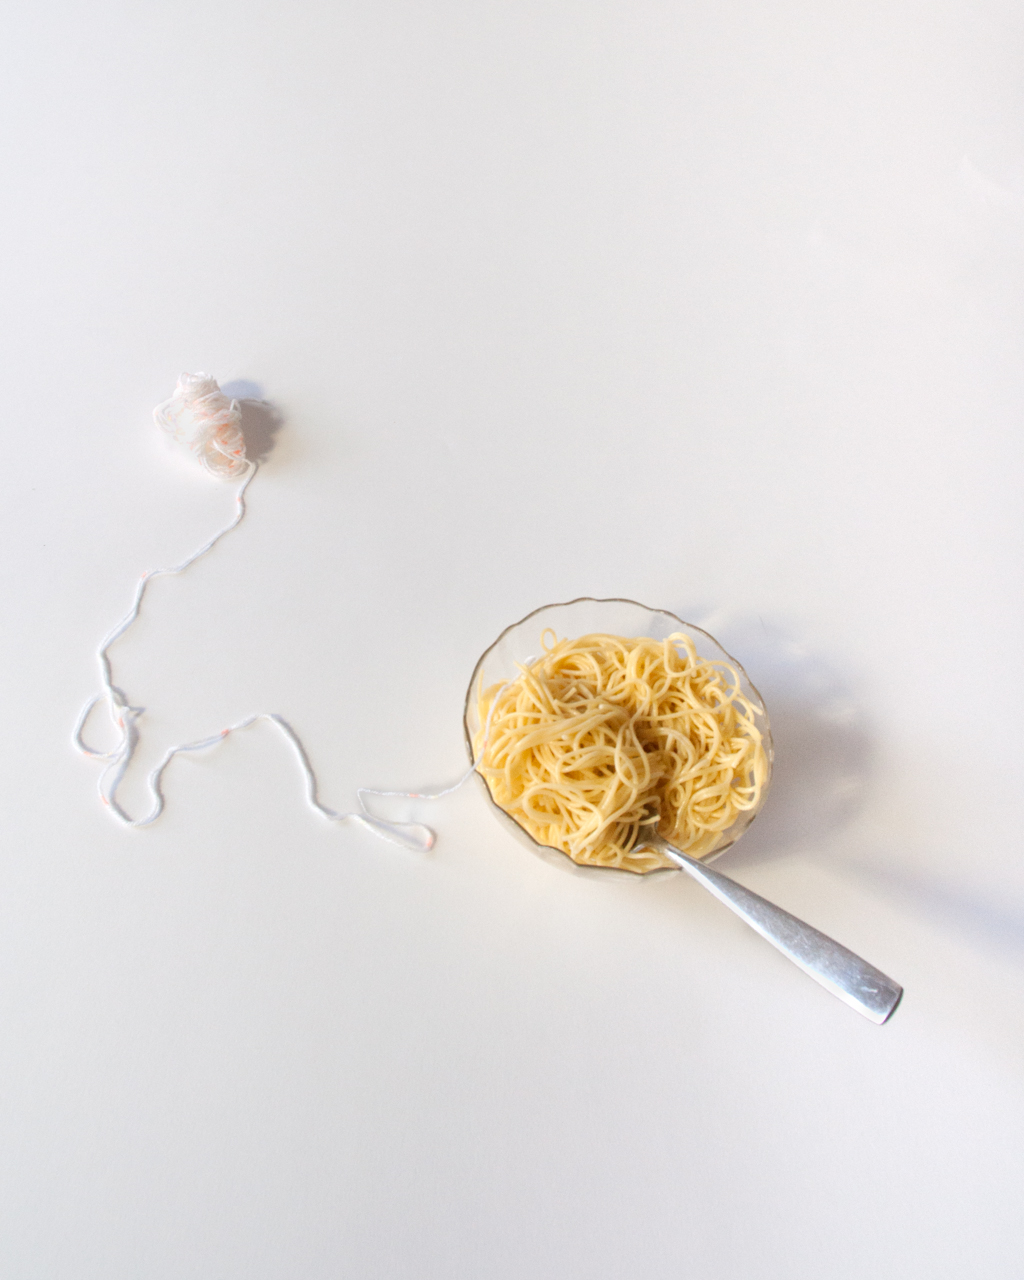 The Yarn and The Spaghetti_Lerman